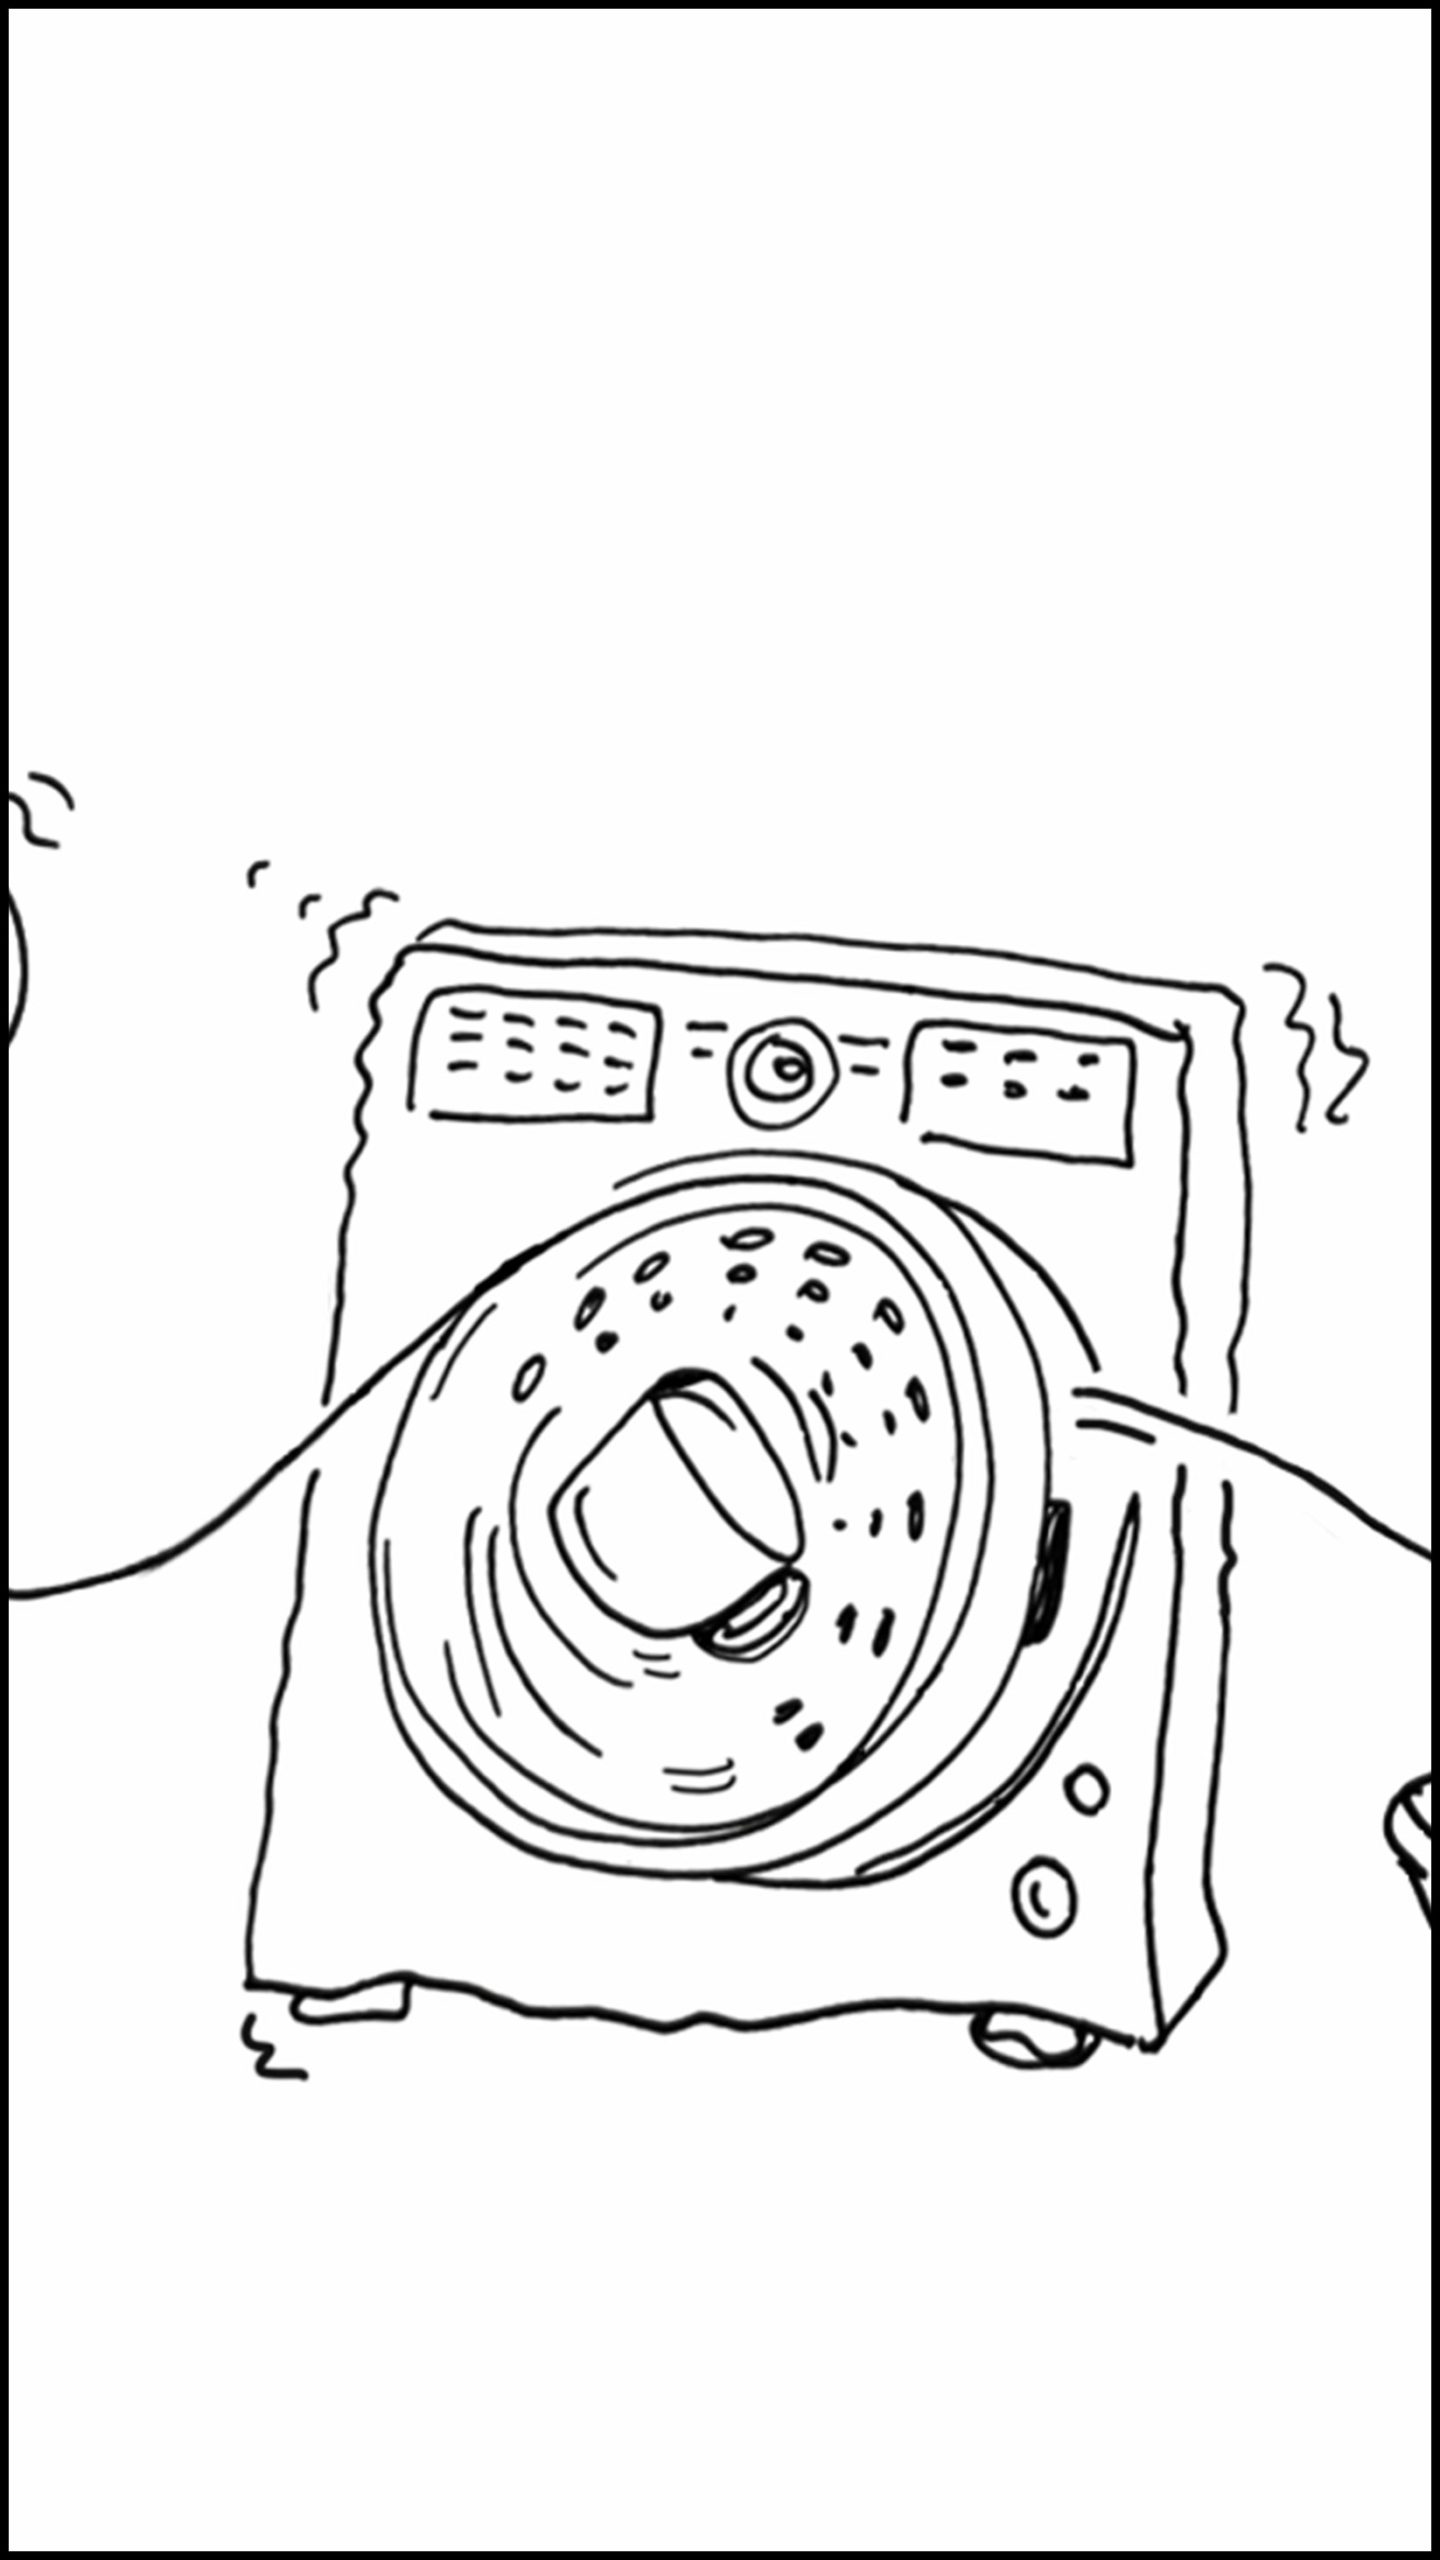 boring appliance doodle by Stella Jurgen